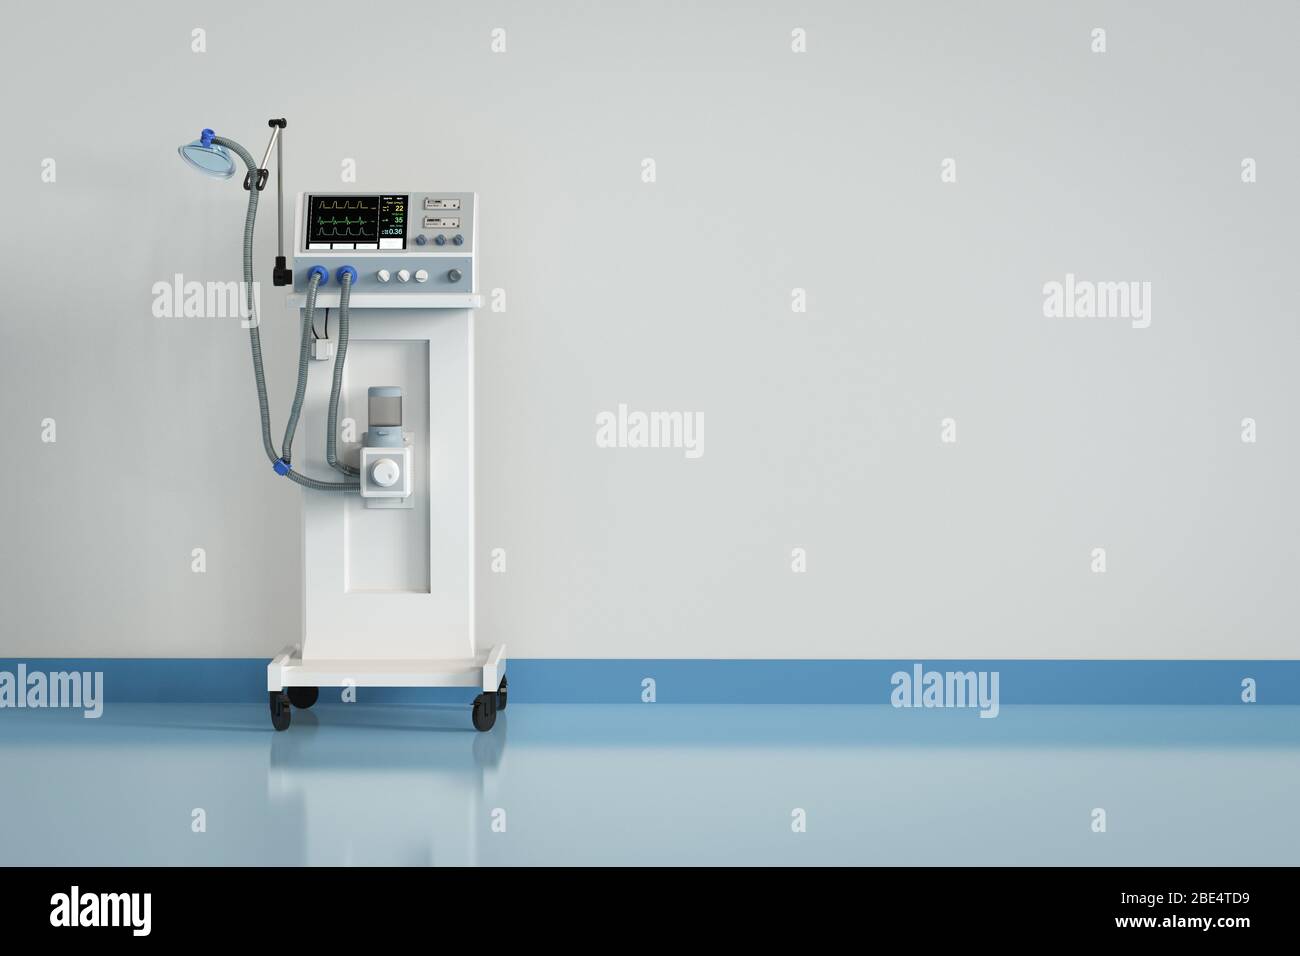 appareil de ventilation médicale en 3 dimensions à l'hôpital Banque D'Images